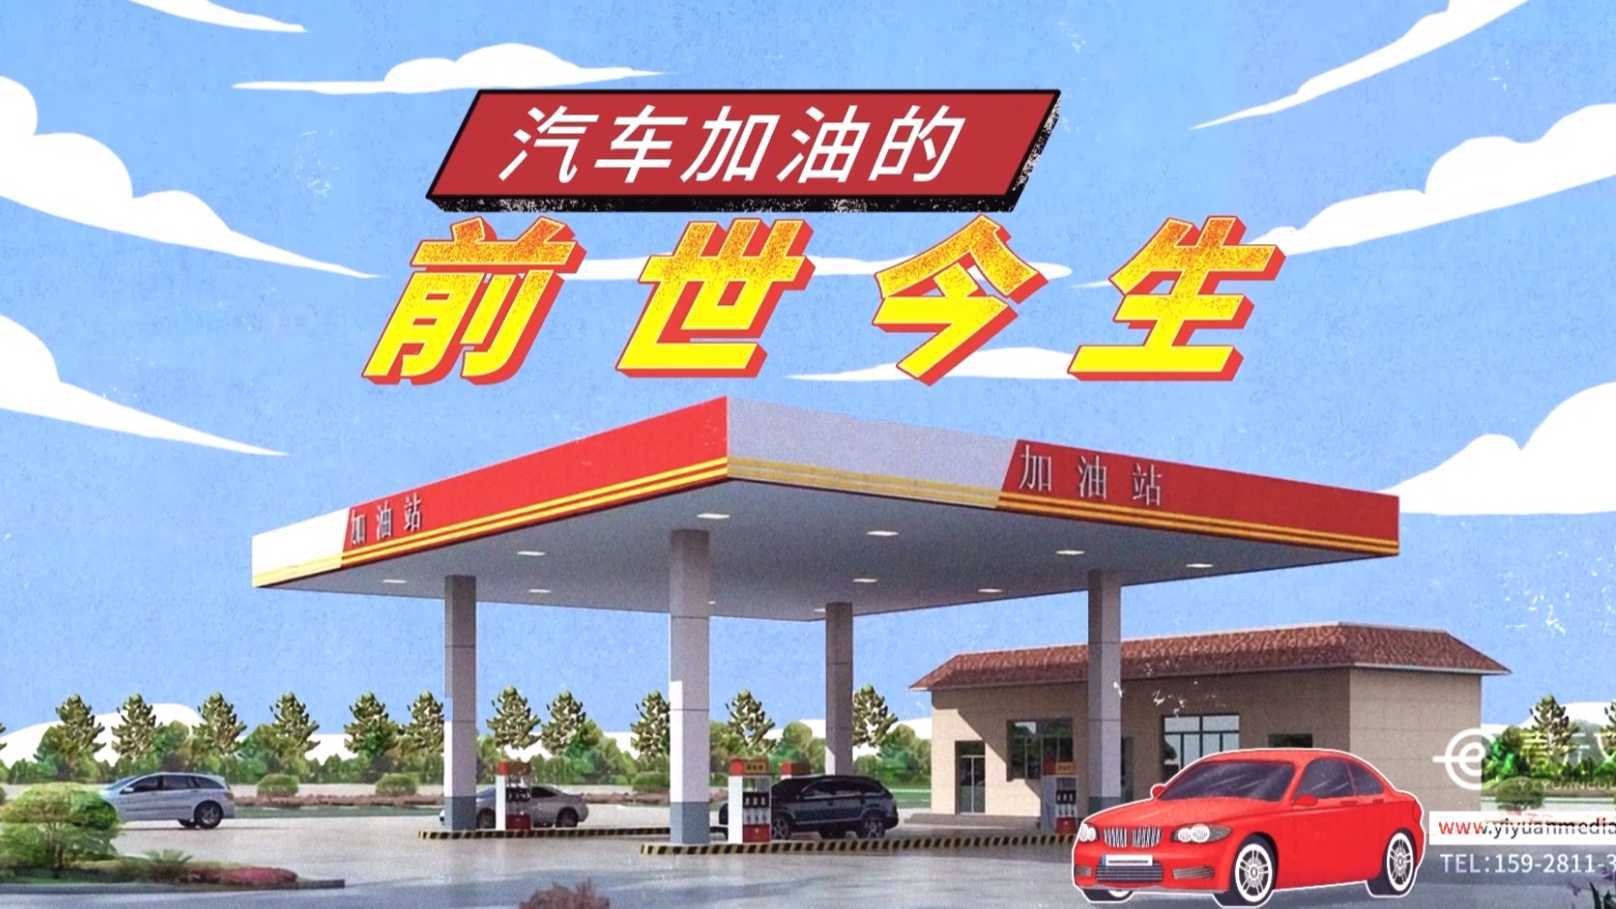 【MG动画】壹元文化X凯励程 汽车加油支付动画科普